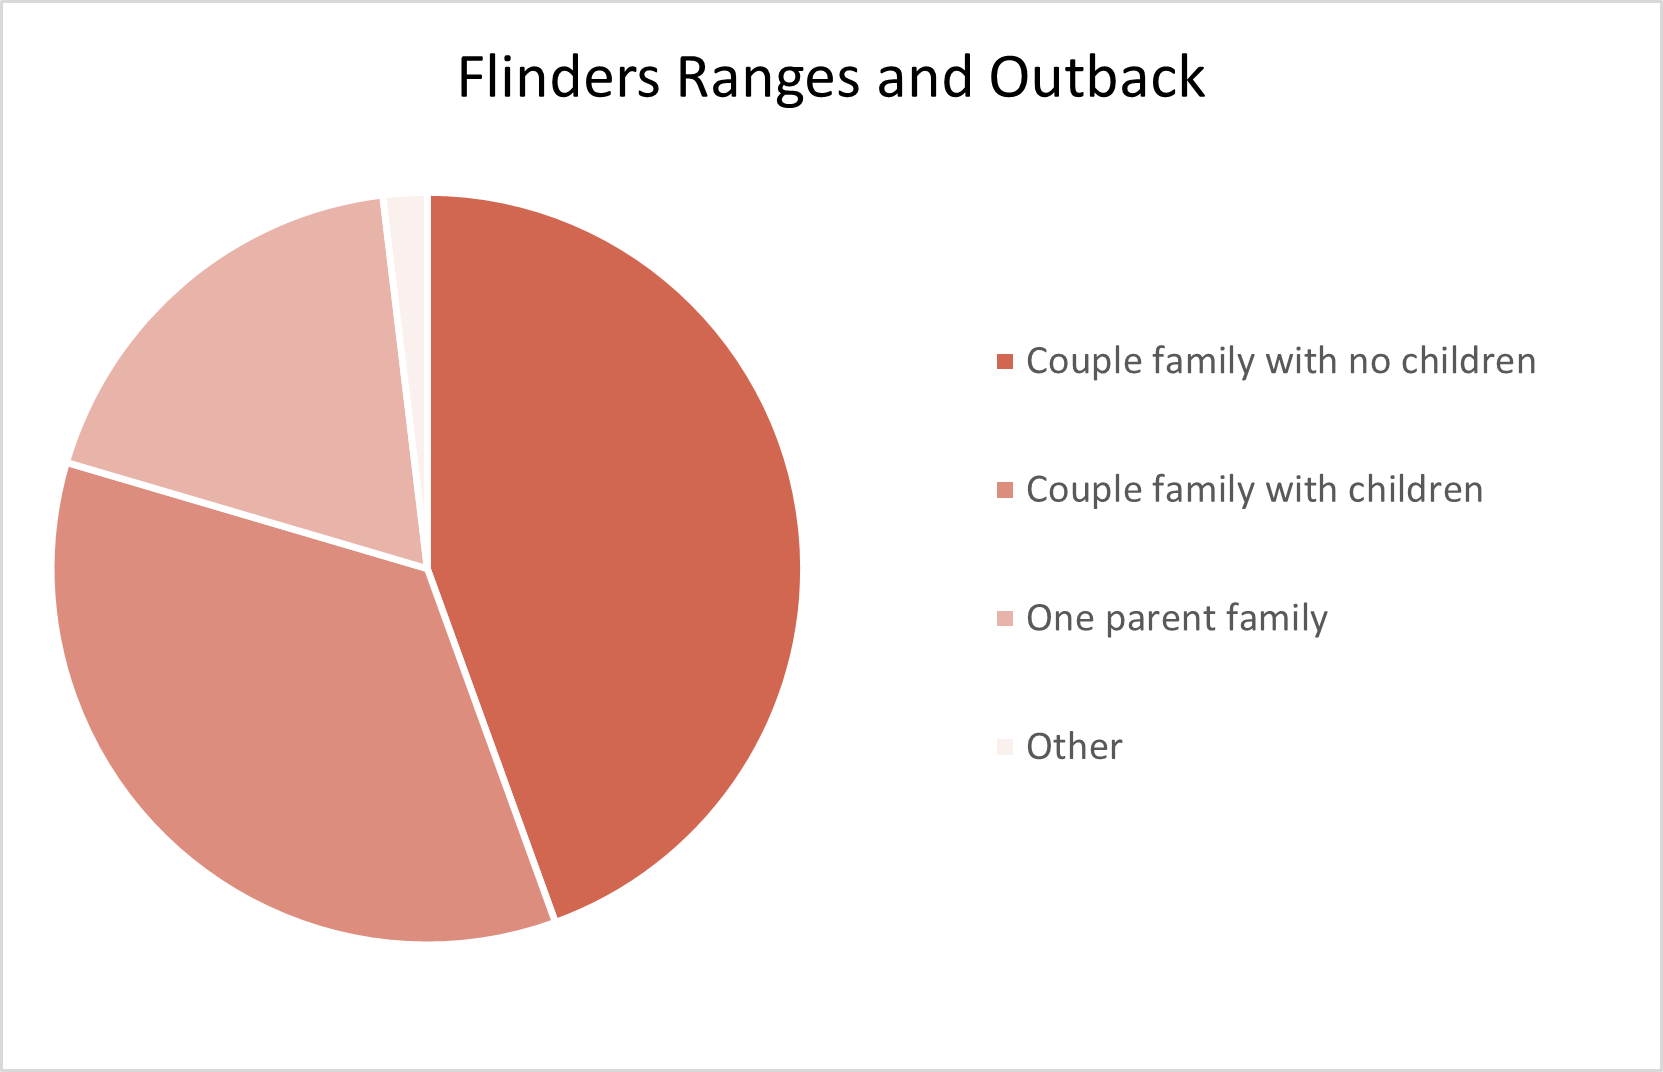 Flinders Ranges and Outback Adelaide Hills Population Statistics